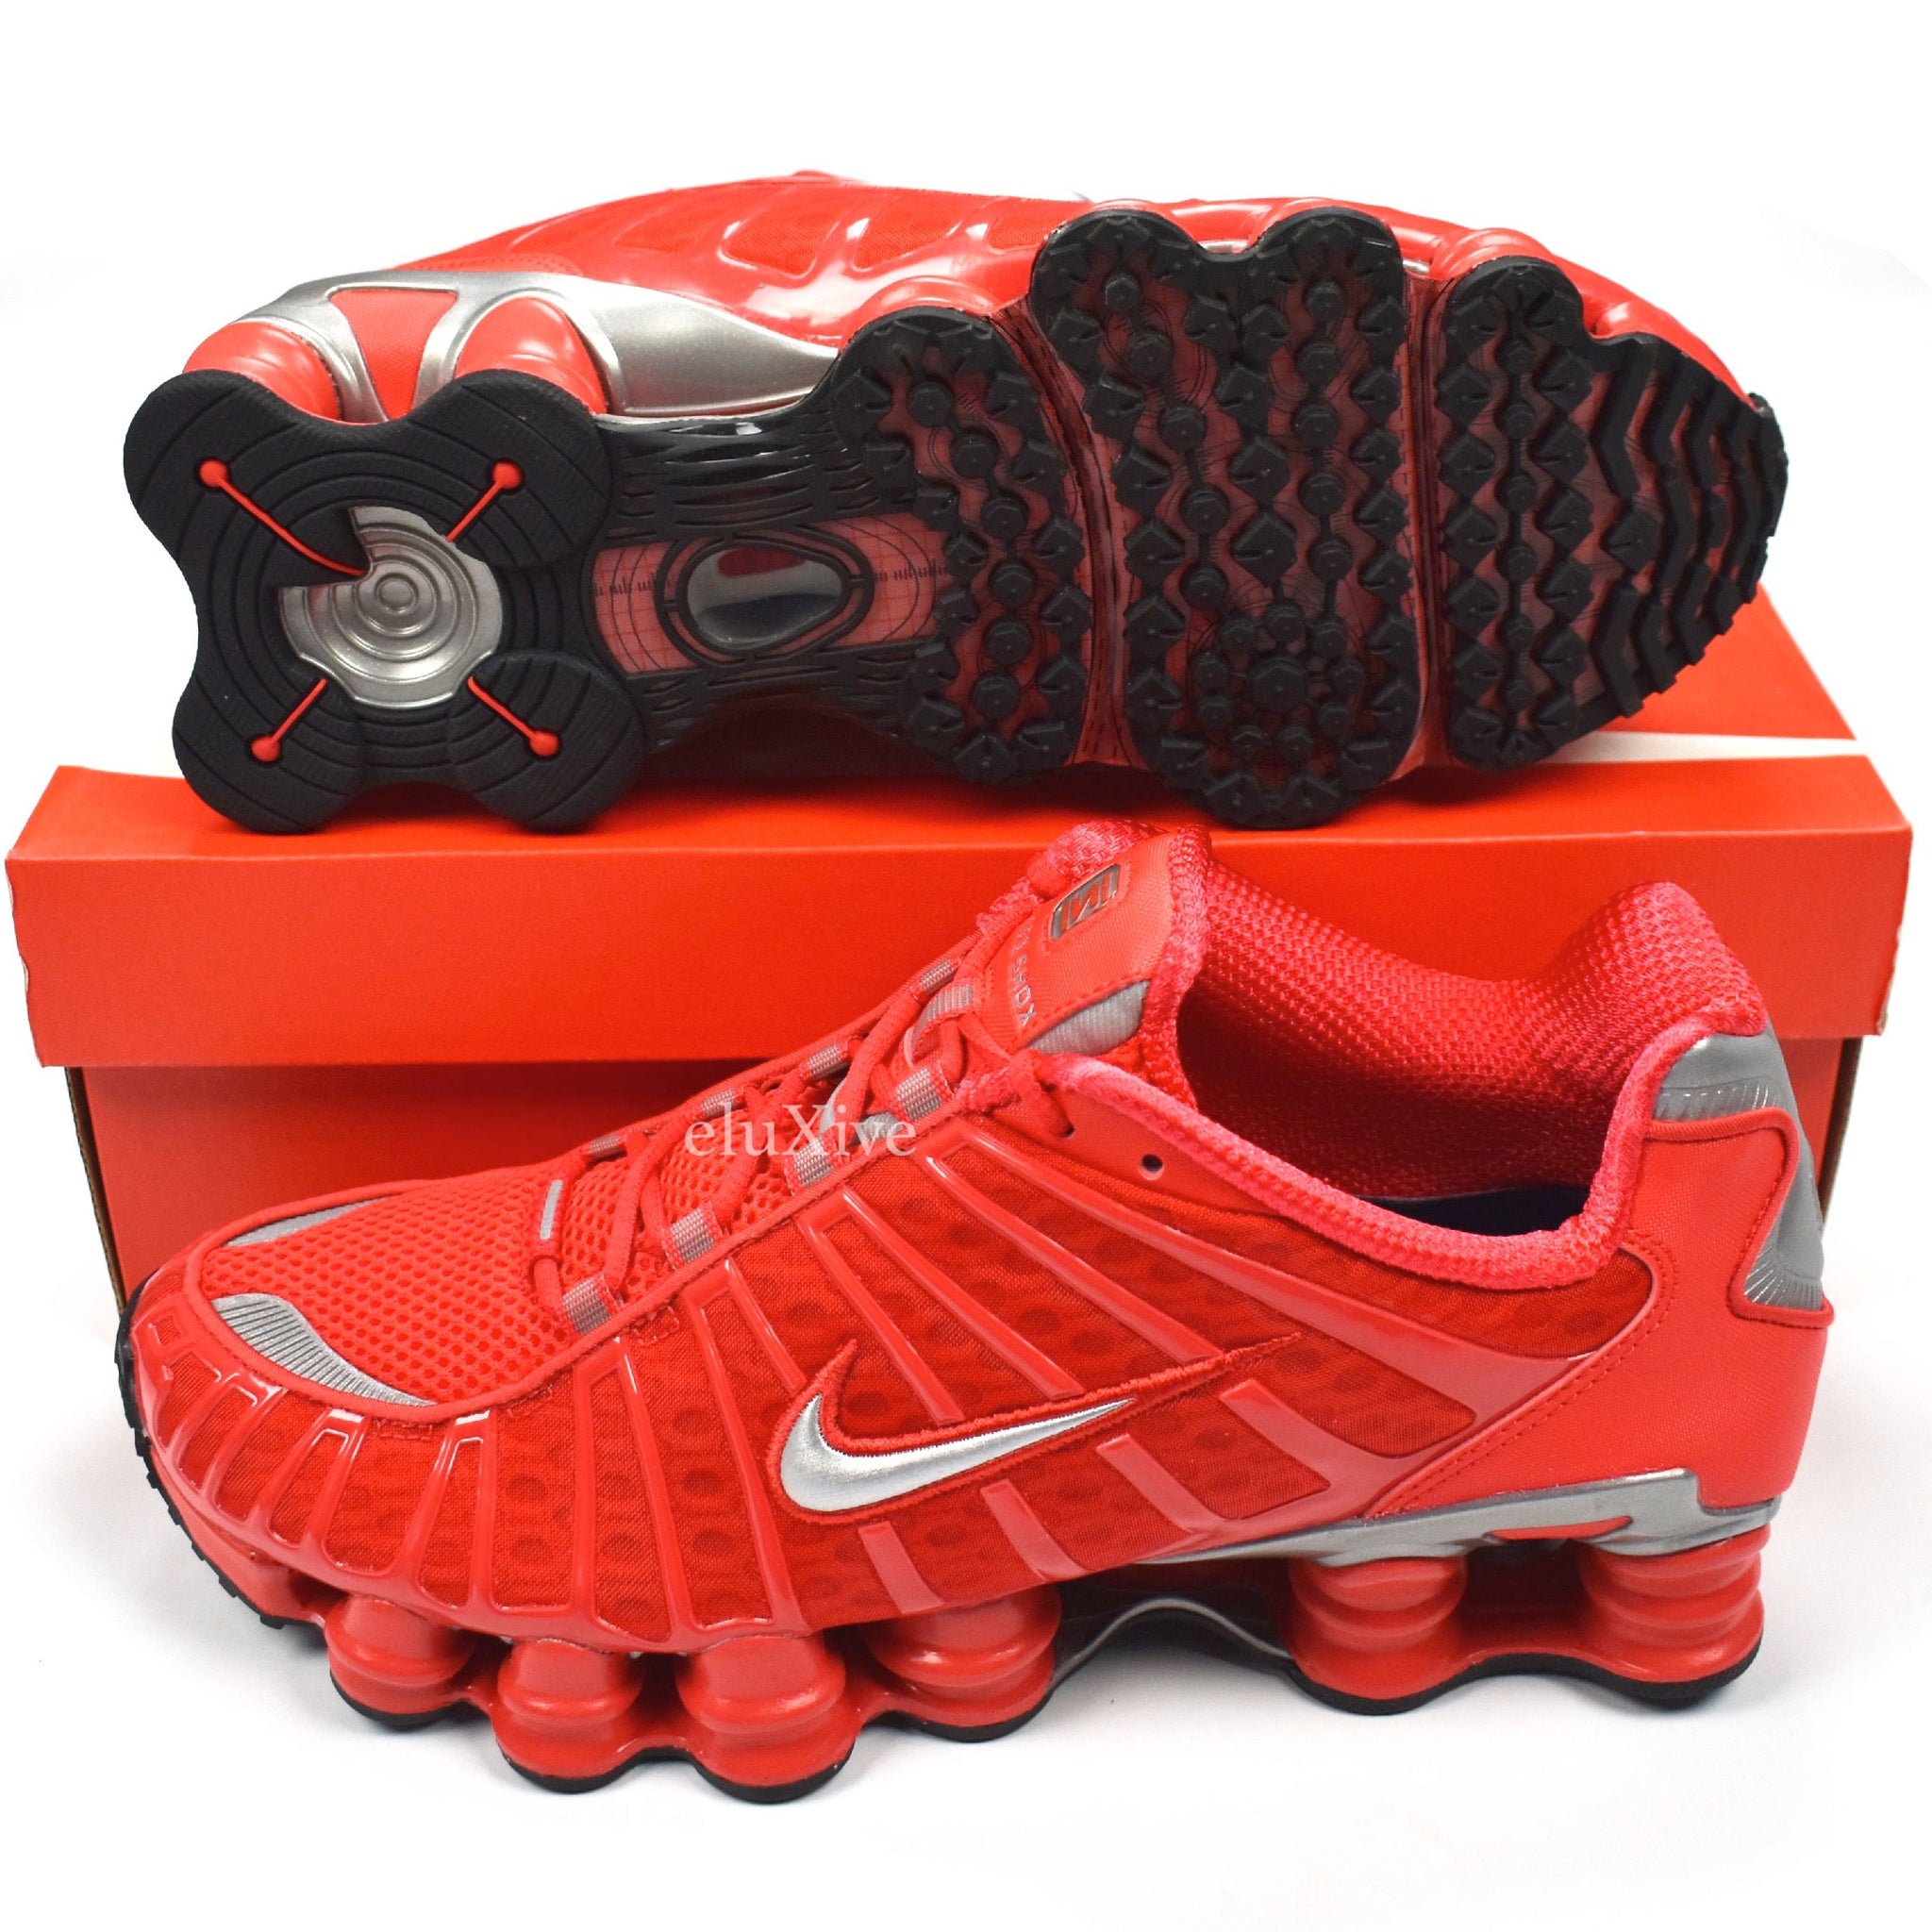 Nike - Shox TL (Speed Red / Metallic Silver) â eluXive